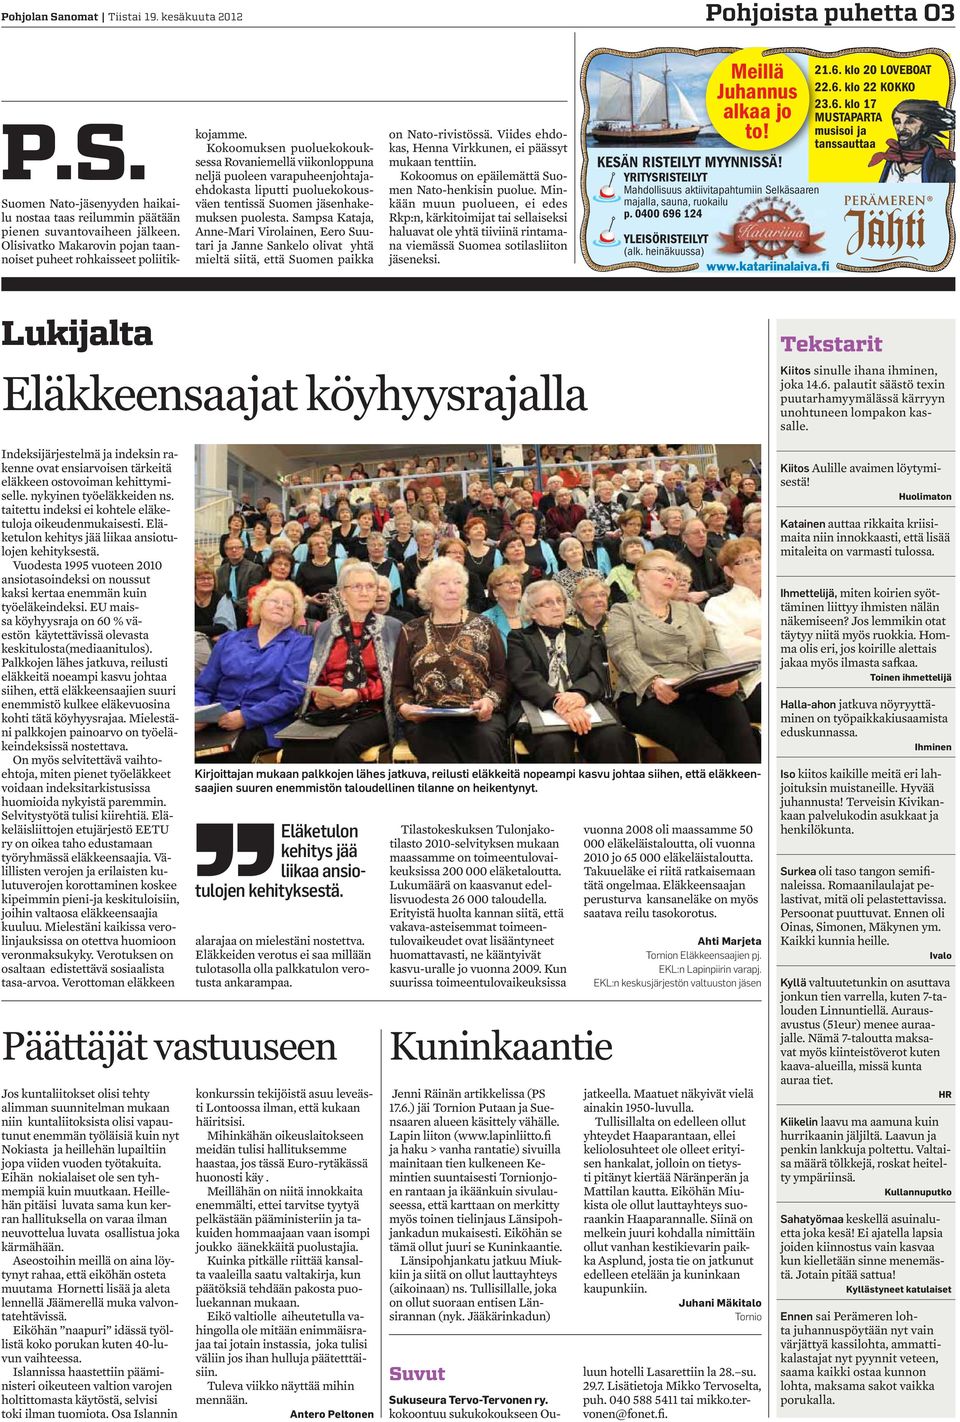 Kokoomuksen puoluekokouksessa Rovaniemellä viikonloppuna neljä puoleen varapuheenjohtajaehdokasta liputti puoluekokousväen tentissä Suomen jäsenhakemuksen puolesta.